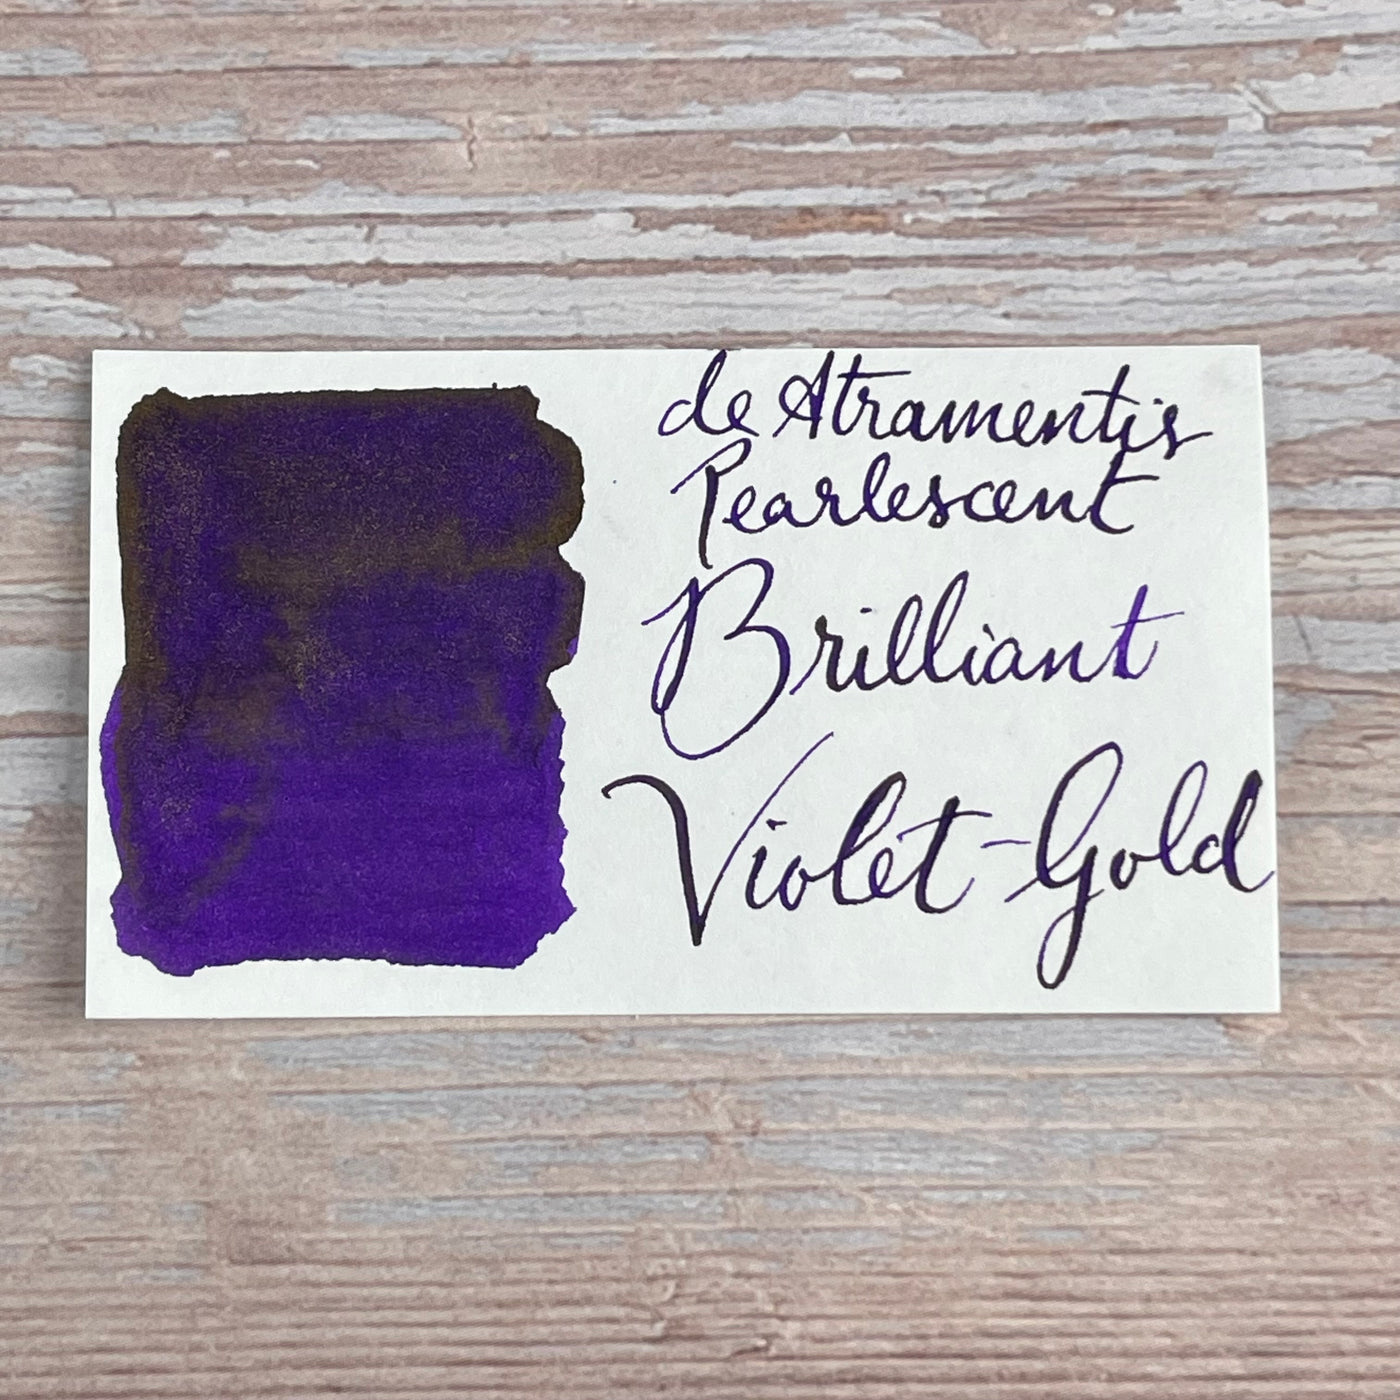 De Atramentis Pearlescent Brilliant Violet Gold - 45ml Bottled ink